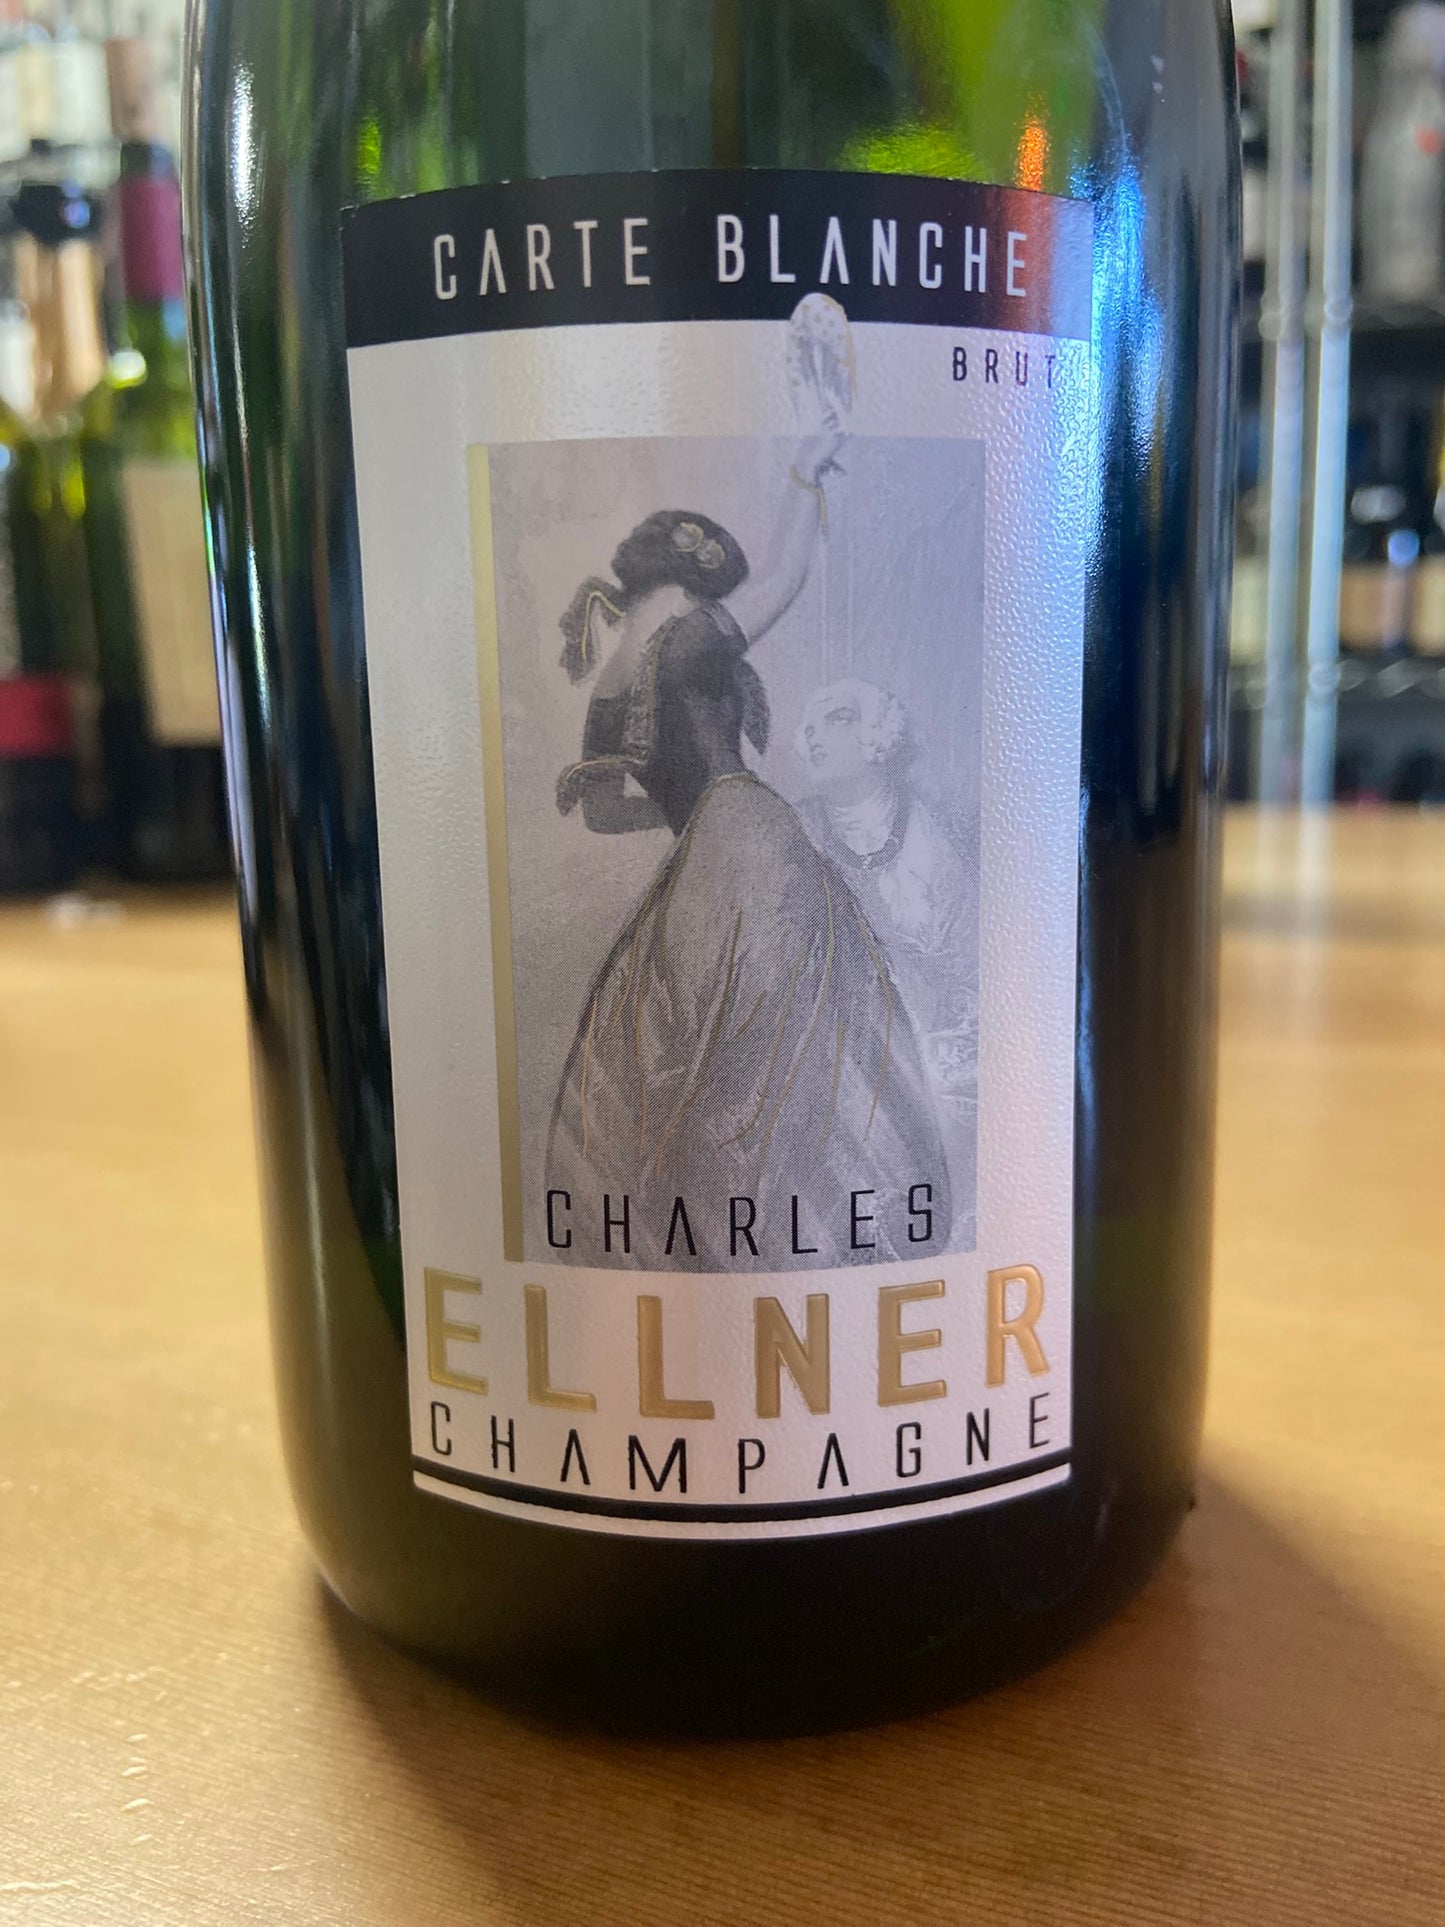 CHARLES ELLNER NV Champagne 'Carte Blanche Brut' (Champagne, France)